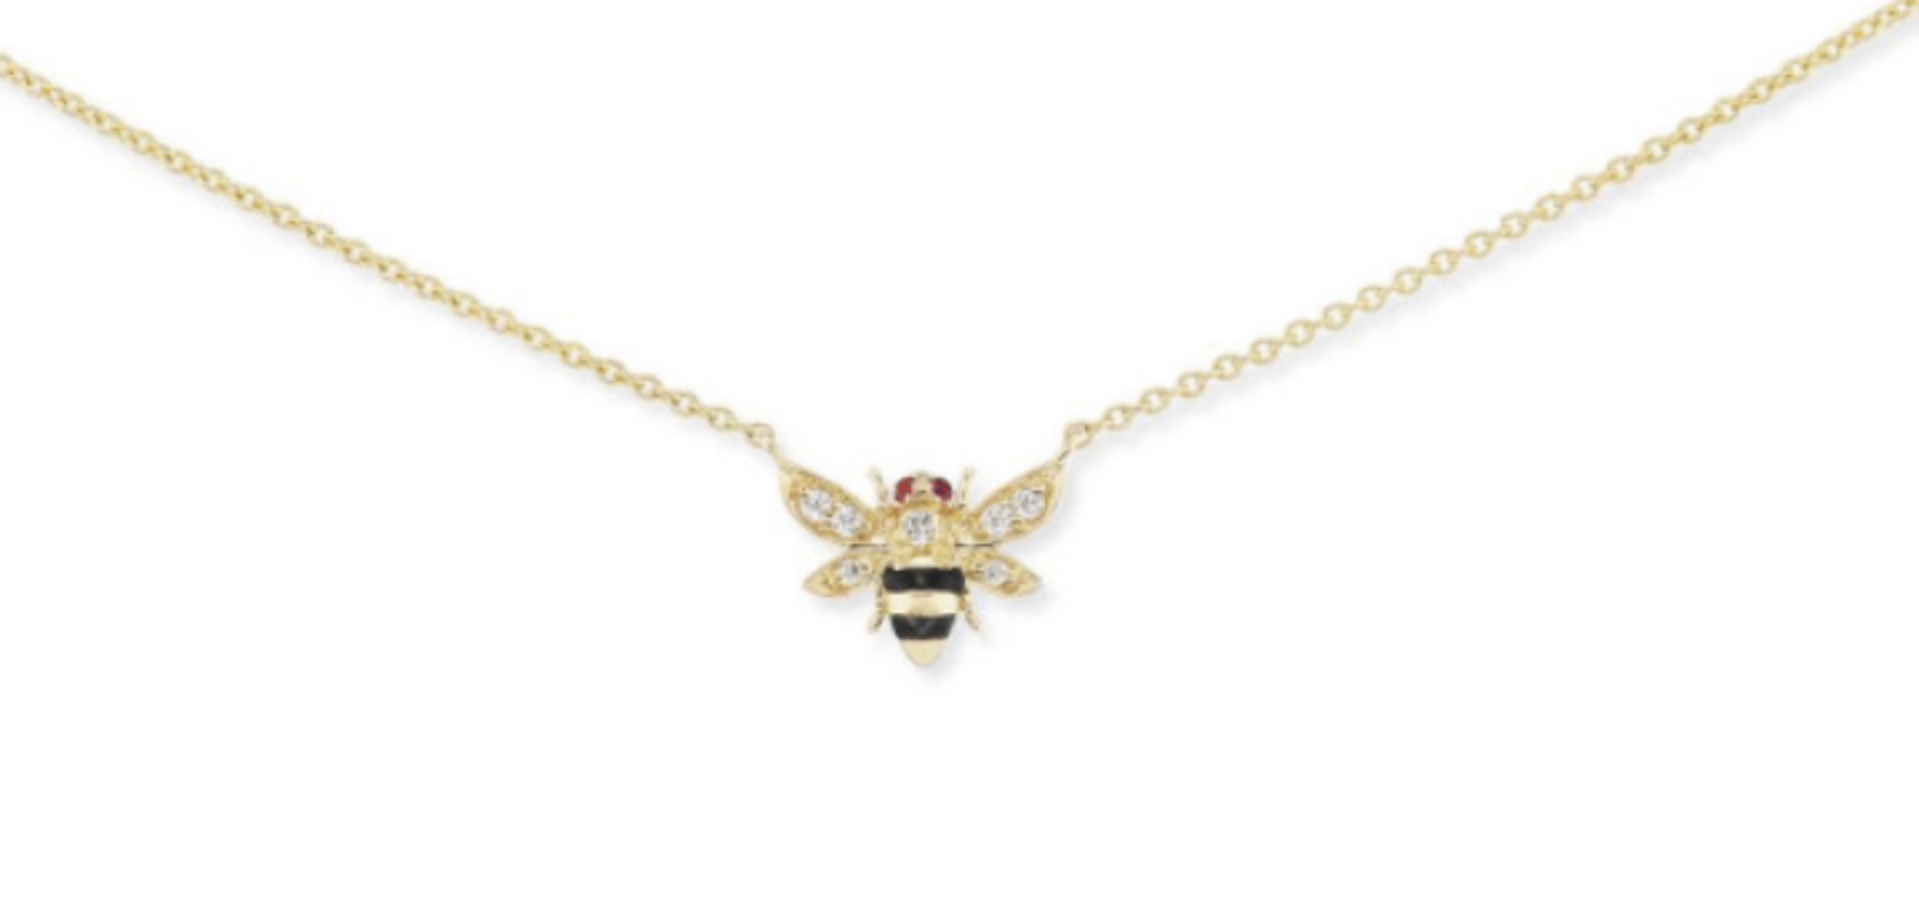 Bee Charm Necklace by Ana Katarina